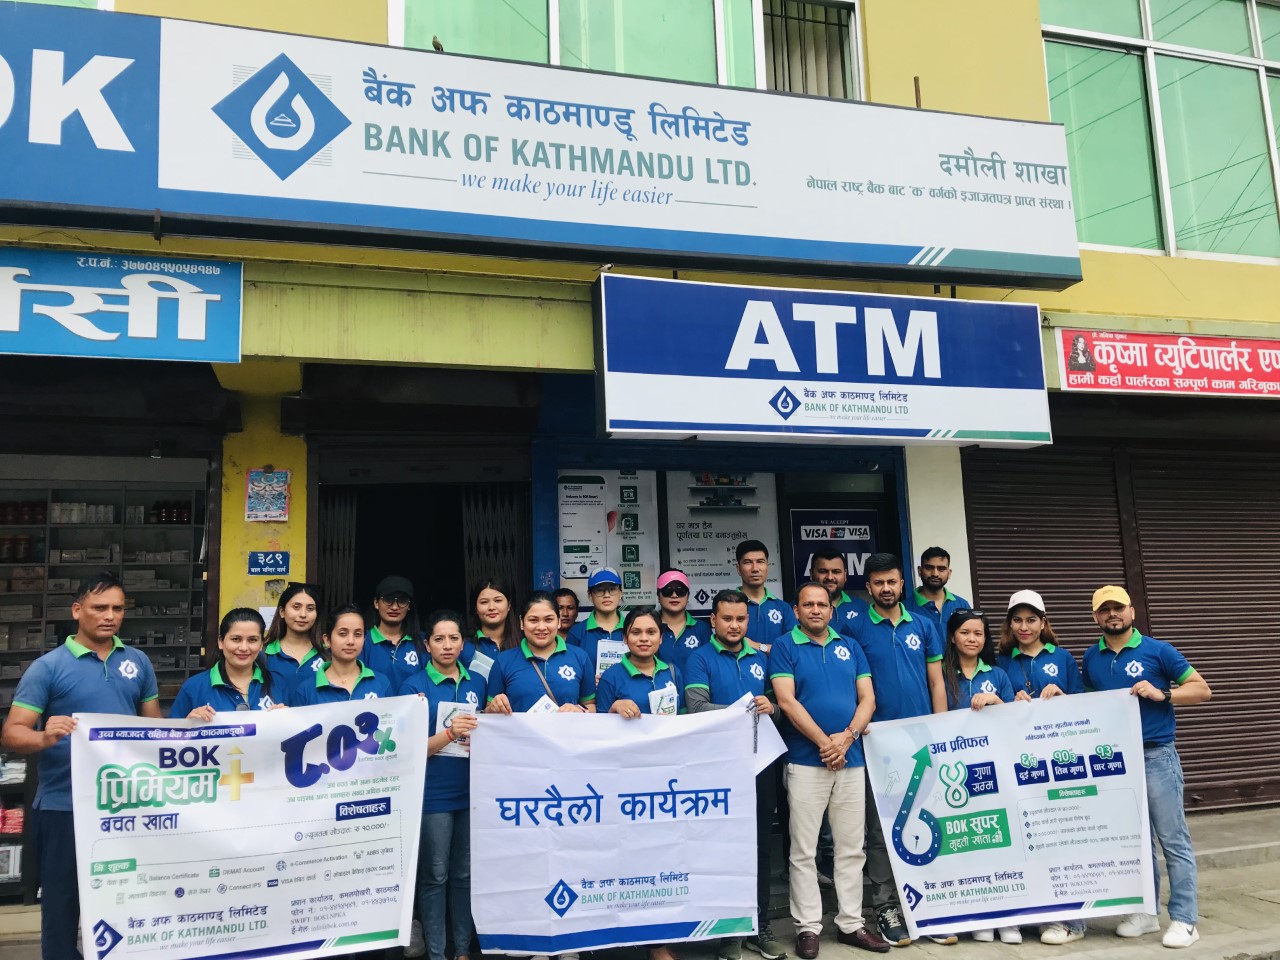 बैंक अफ काठमाण्डूको गण्डकी प्रदेशका विभिन्न स्थानमा घरदैलो कार्यक्रम सम्पन्न